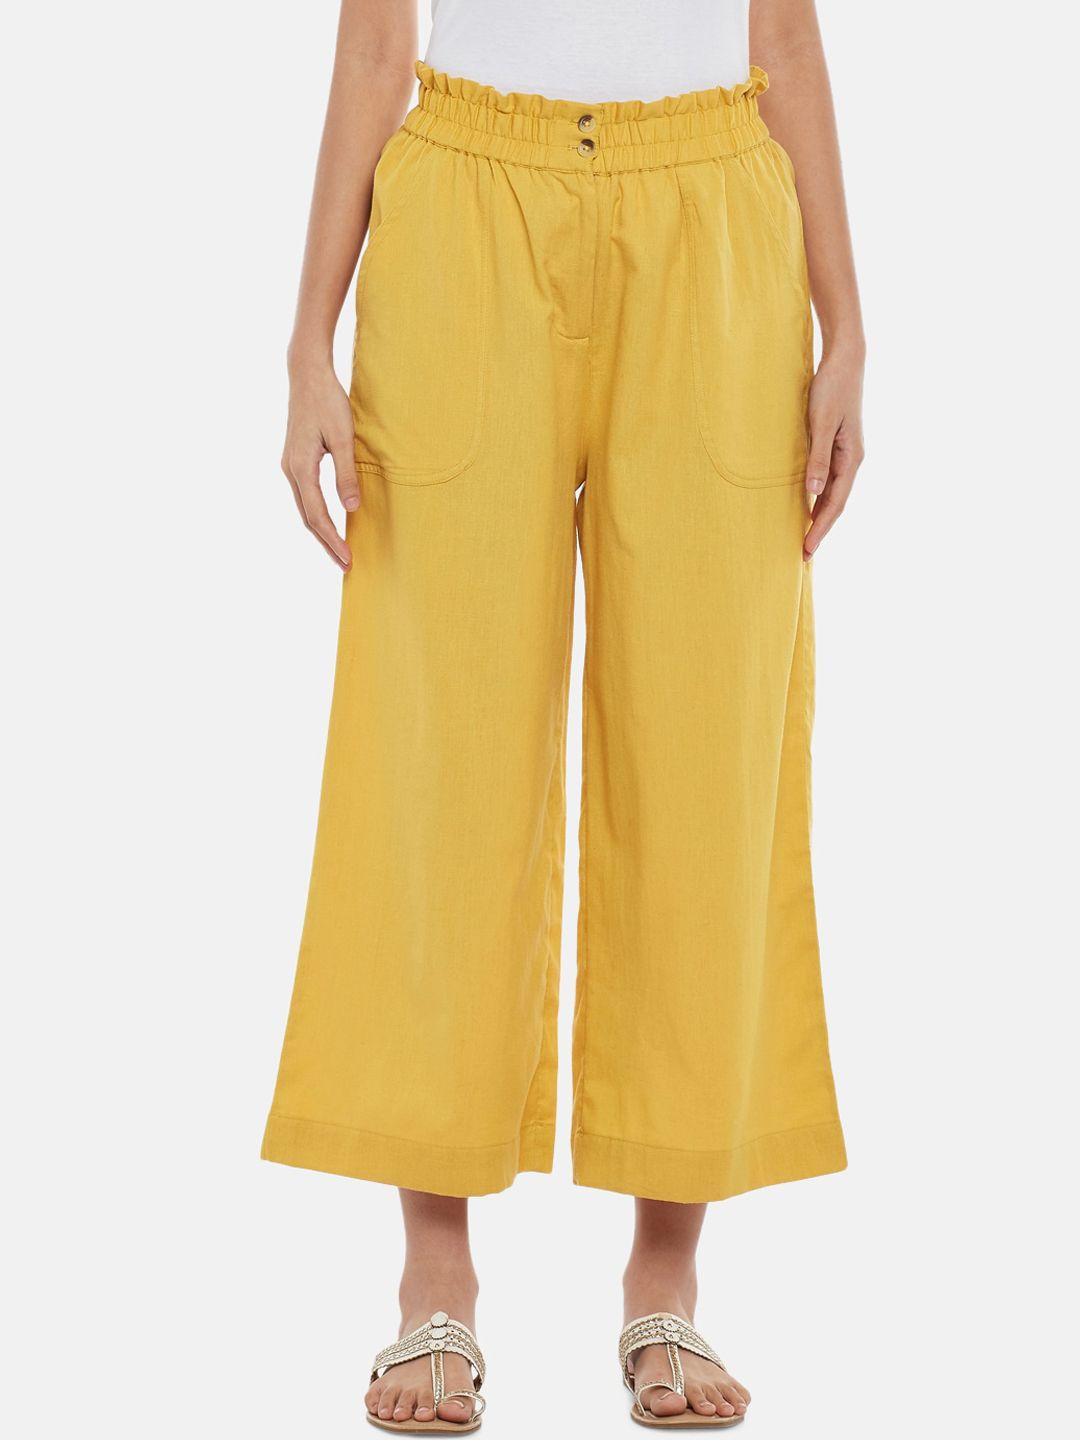 akkriti by pantaloons women mustard yellow culottes trousers